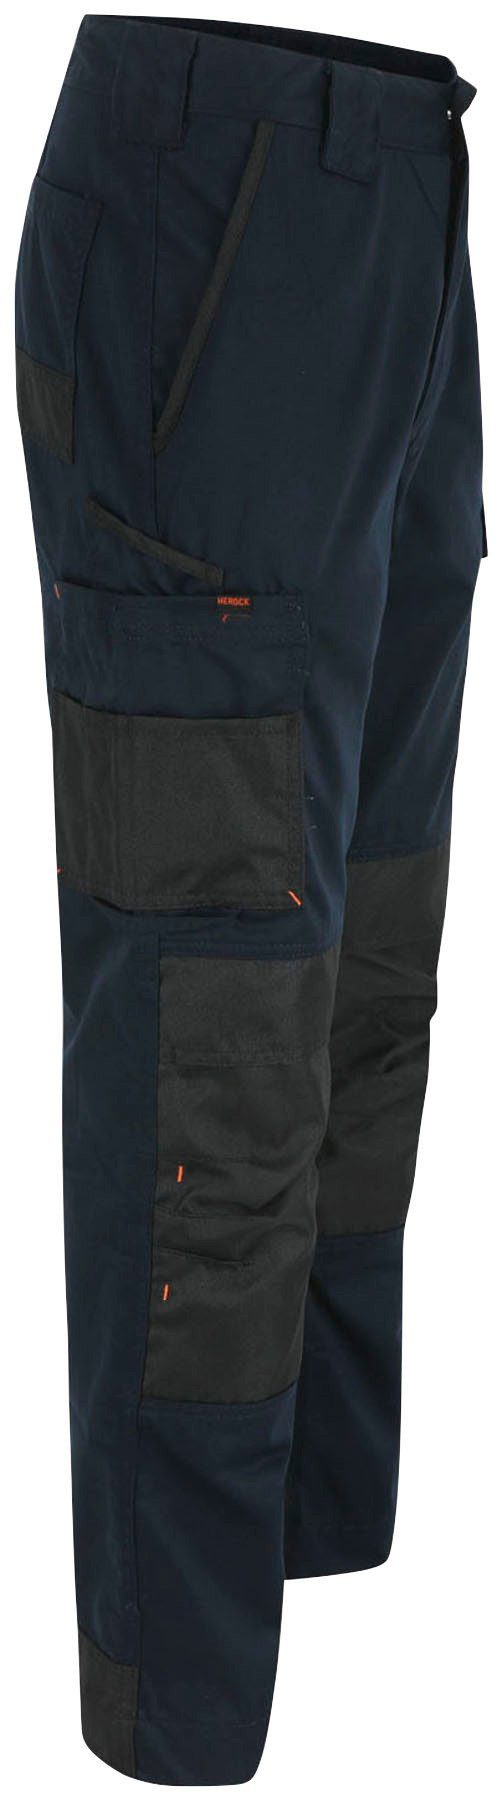 Passform Mars Herock marine Taschen, angenehme Arbeitshose Leicht bequem, und 10 wasserabweisend, Hose